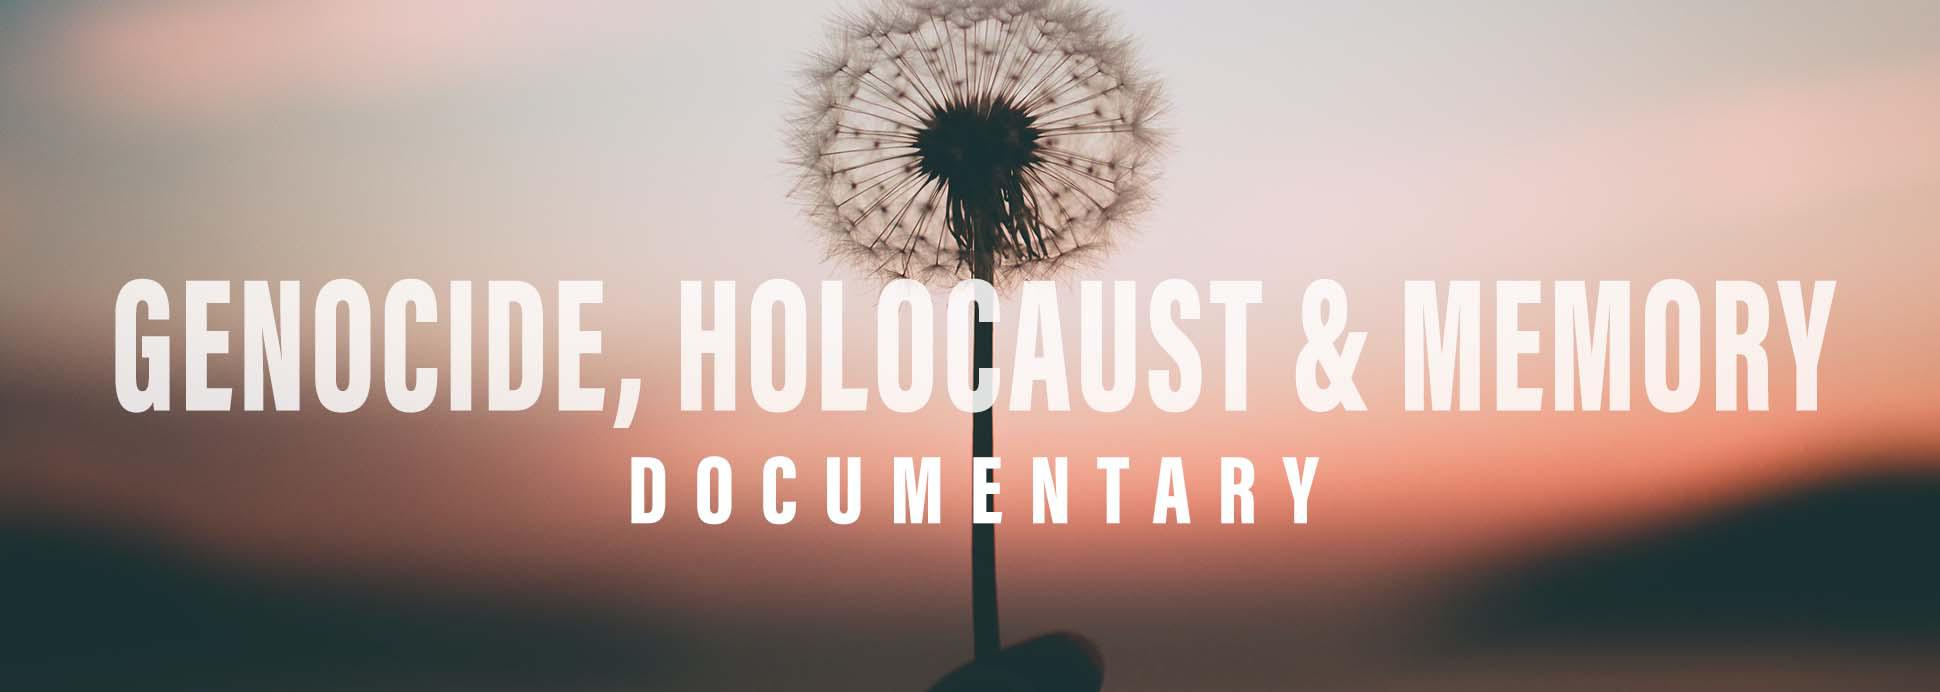 Genocide Holocaust & Memory